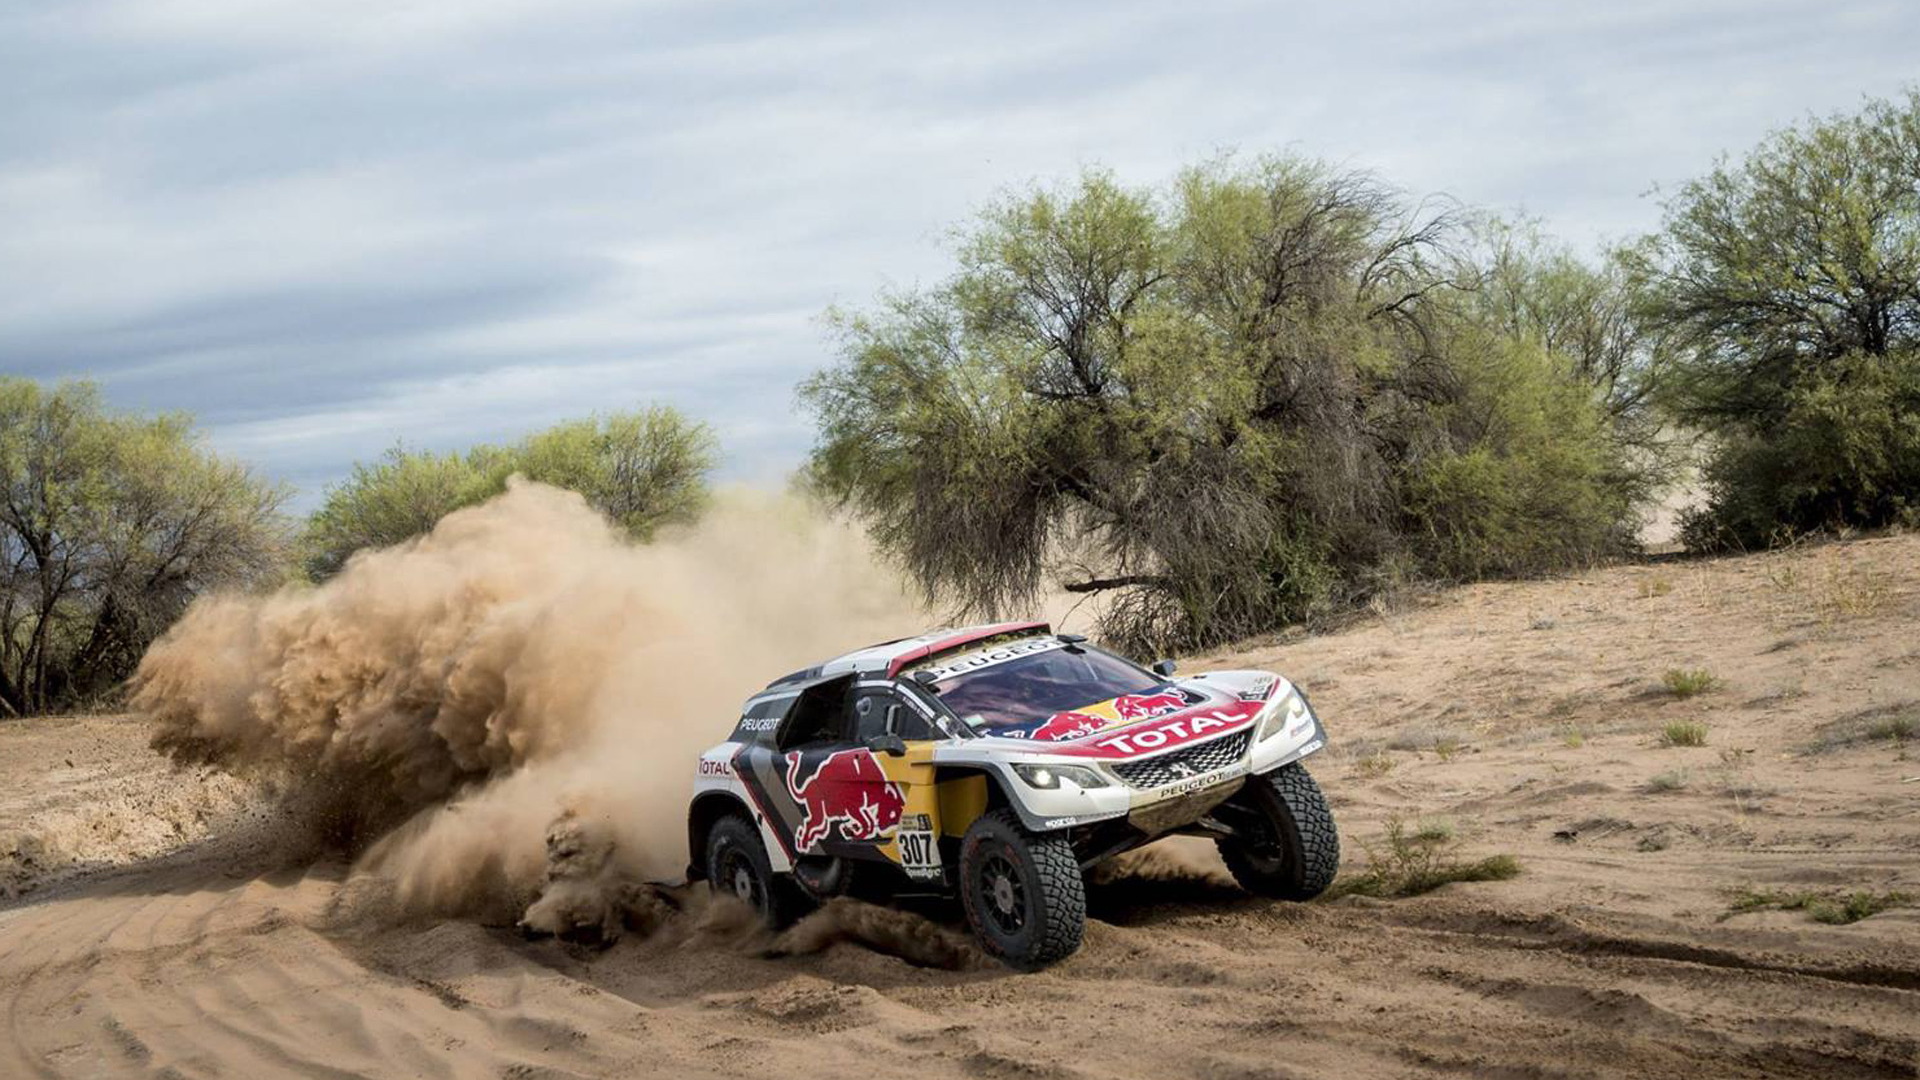 2017 Peugeot 3008 DKR in the Dakar rally